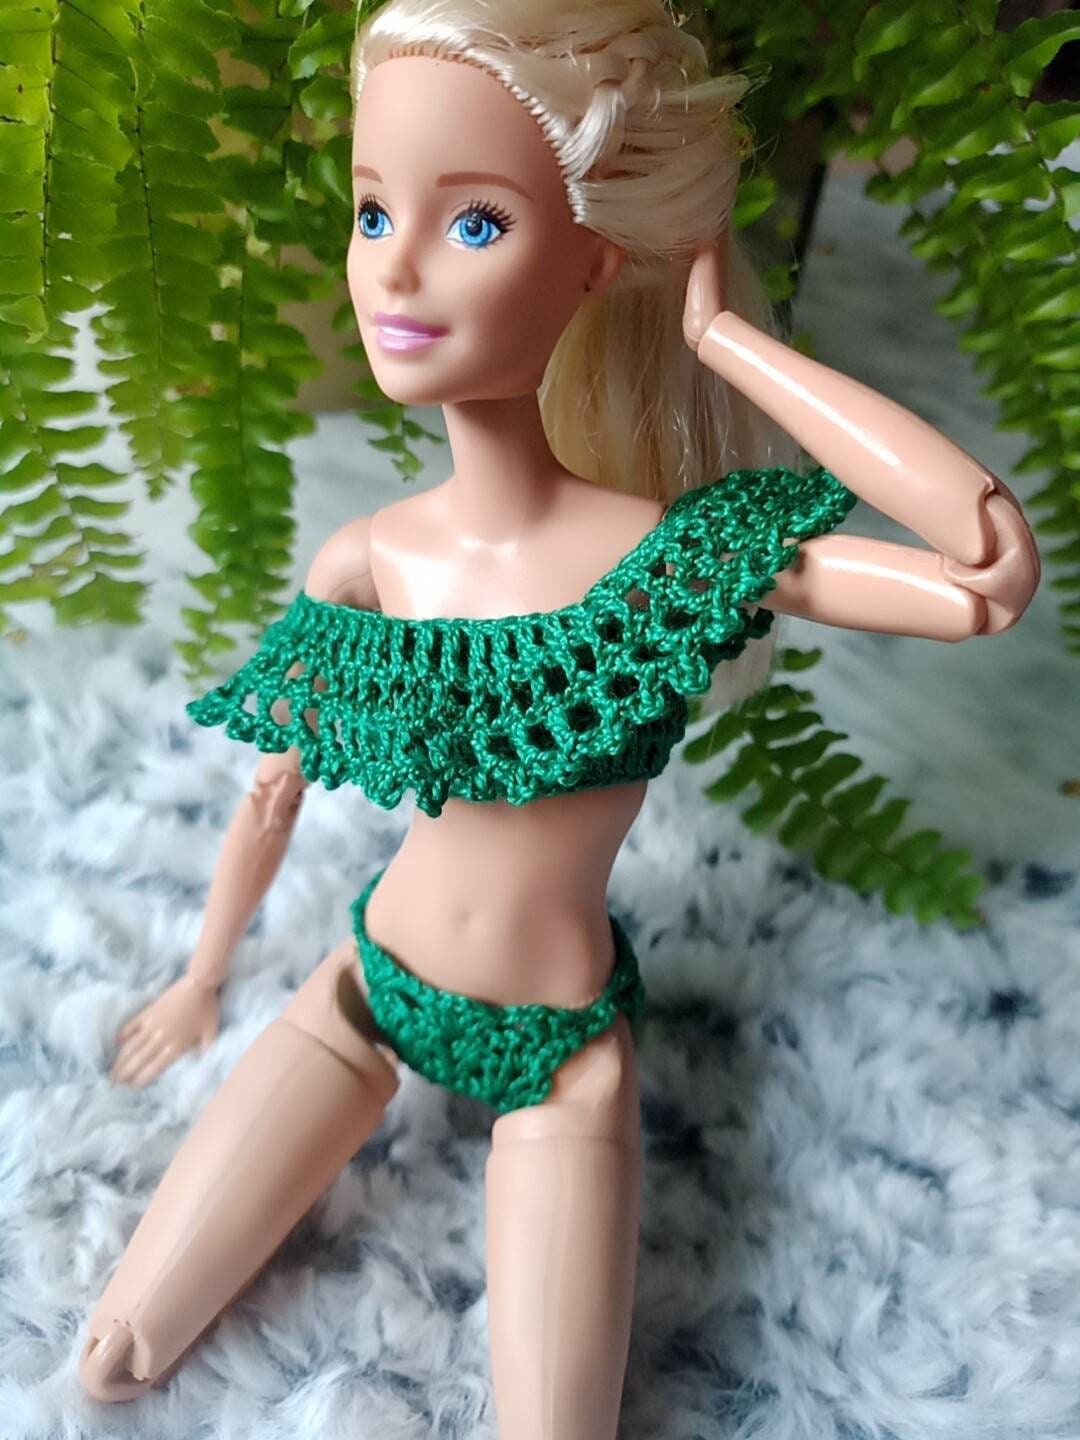 Taille NO DOLL Kit de vêtements pour poupée Barbie, avec 1 maillot de bain  bikini en bleu cerise, 1 chaise de plage, 1 bouée de sauvetage et 1  pantoufle, accessoire de 4 articles